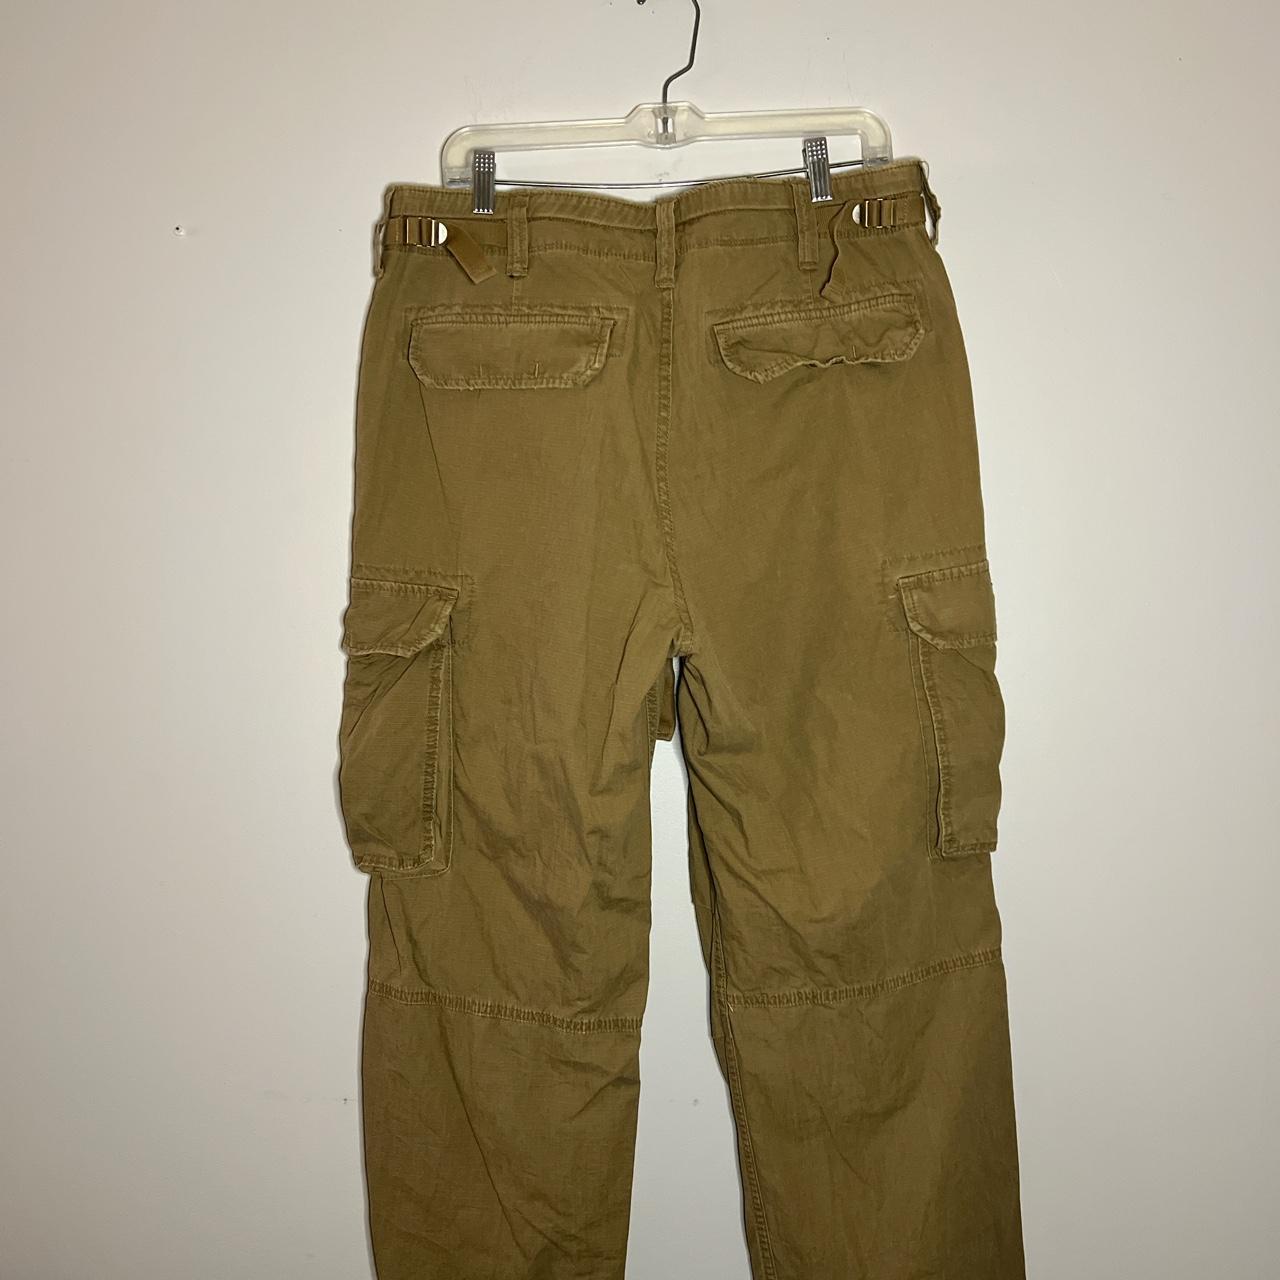 Vintage Polo Ralph Lauren cargo pants size 36x32 but... - Depop